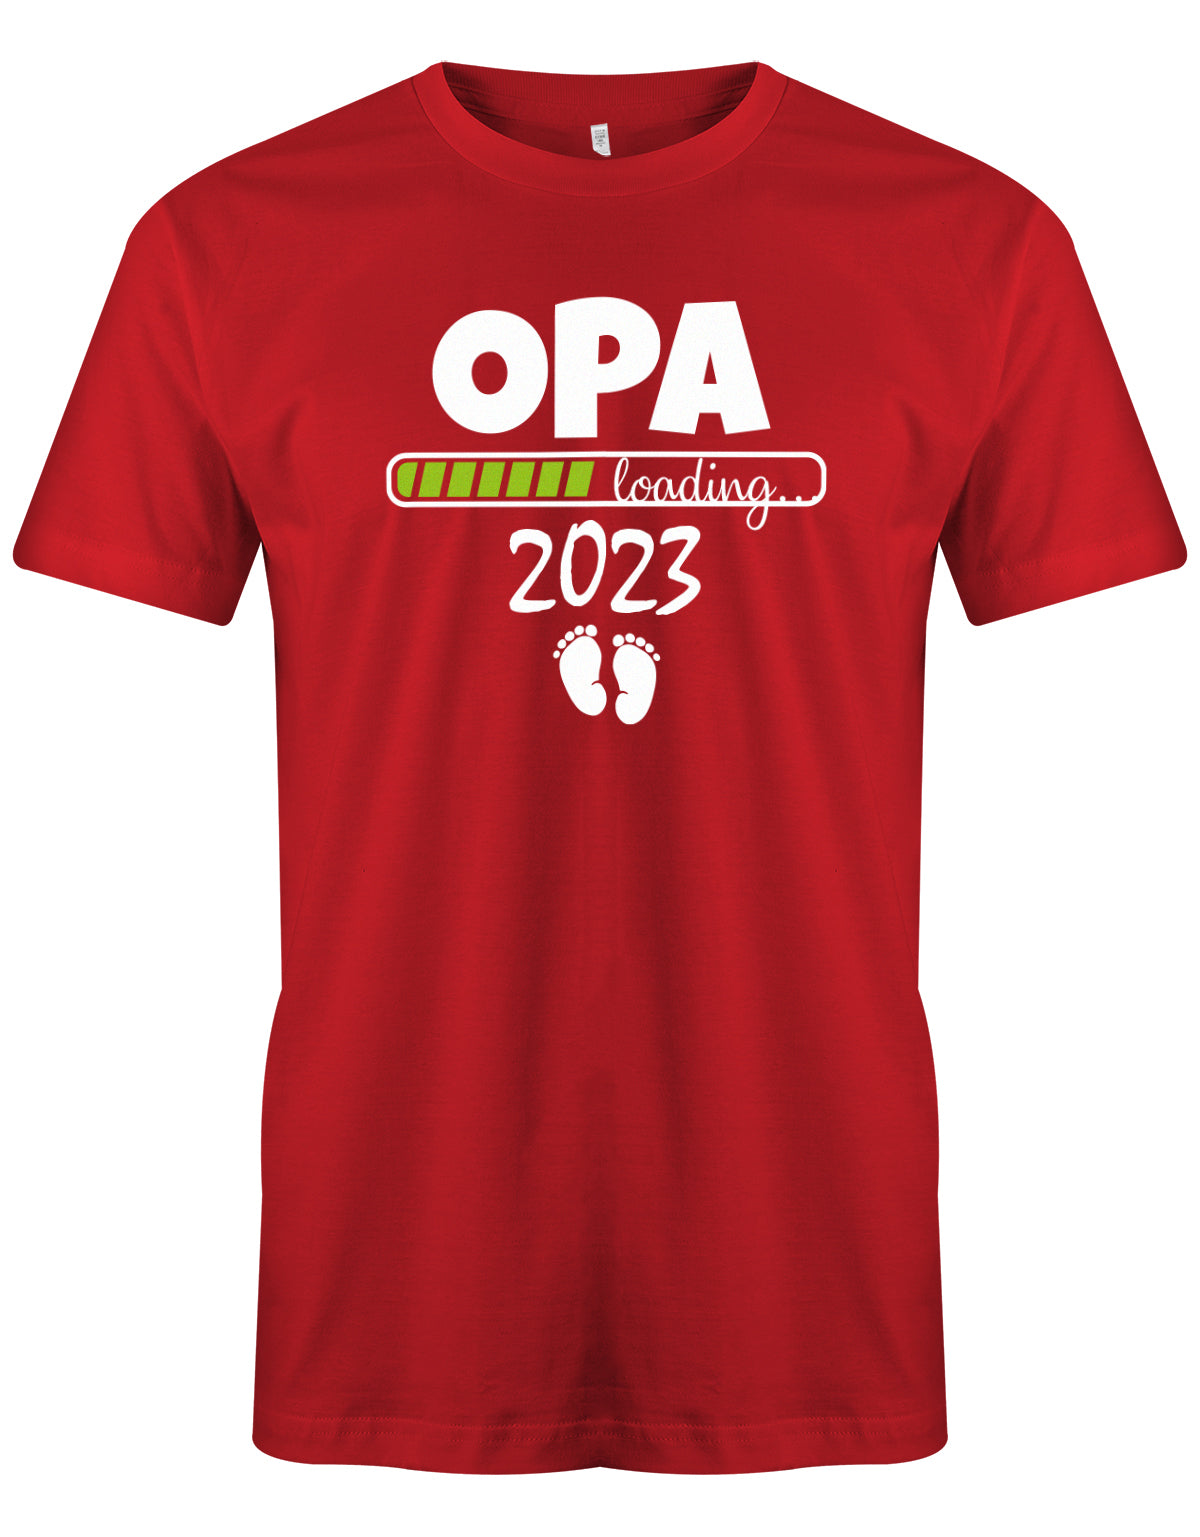 Opa T-Shirt Spruch für werdenden Opa - Opa Loading 2023 Balken lädt. Fußabdrücke Baby. Rot